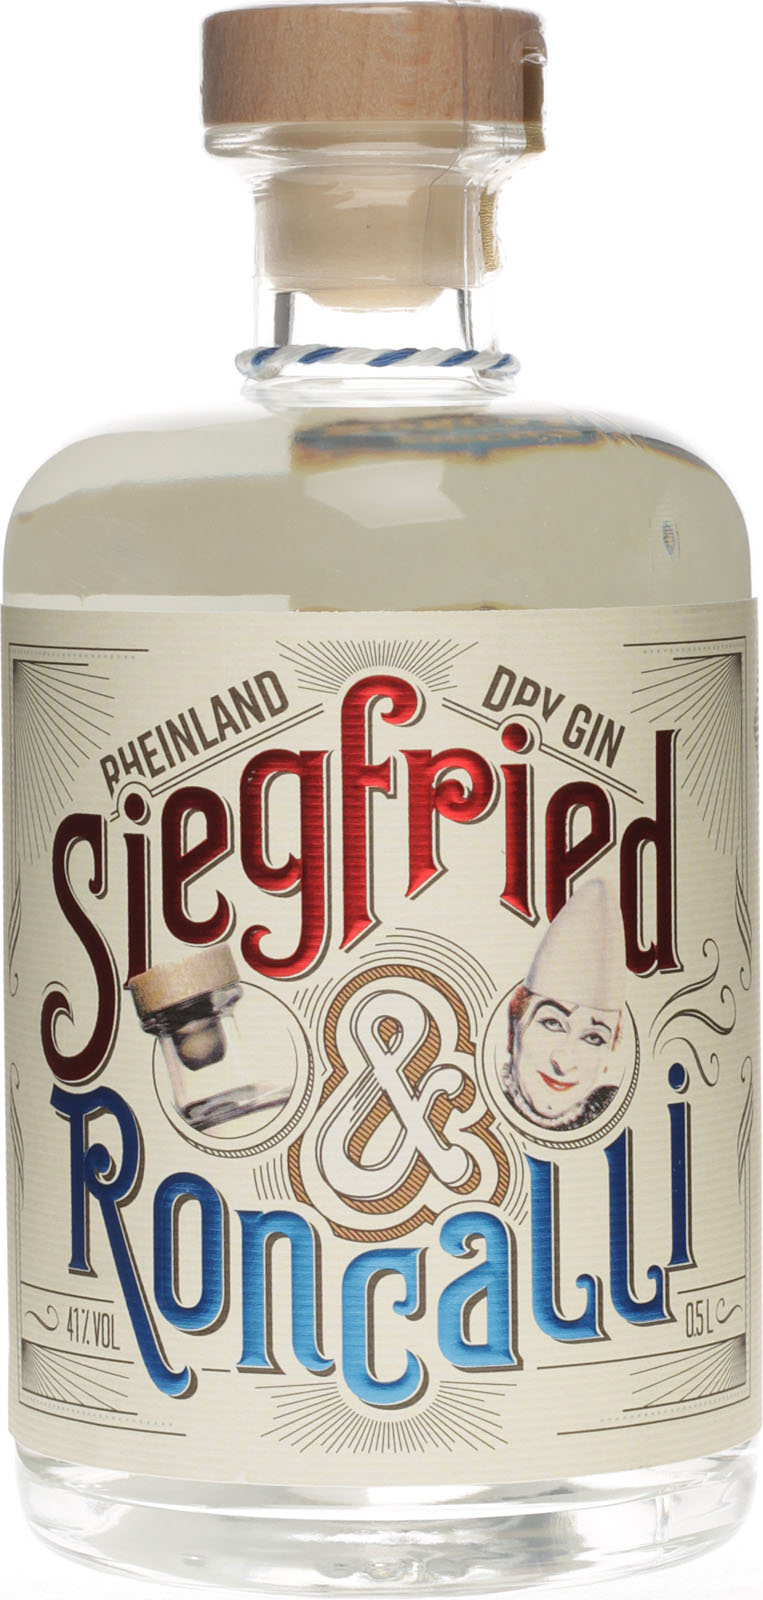 Siegfried Rheinland Roncalli Edition Dry Gin 0,5 Liter